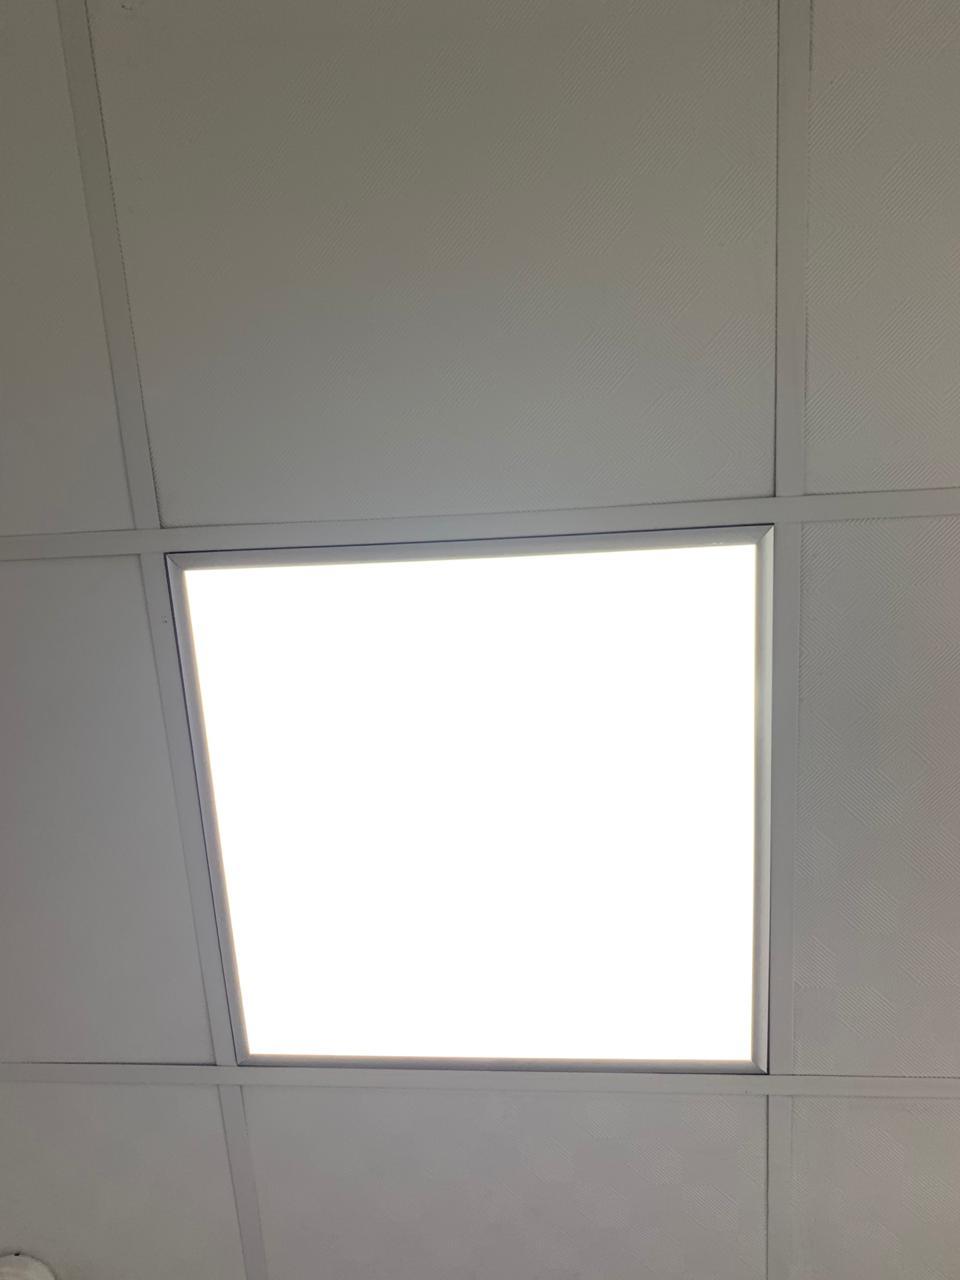 Светильники в потолок Армстронг